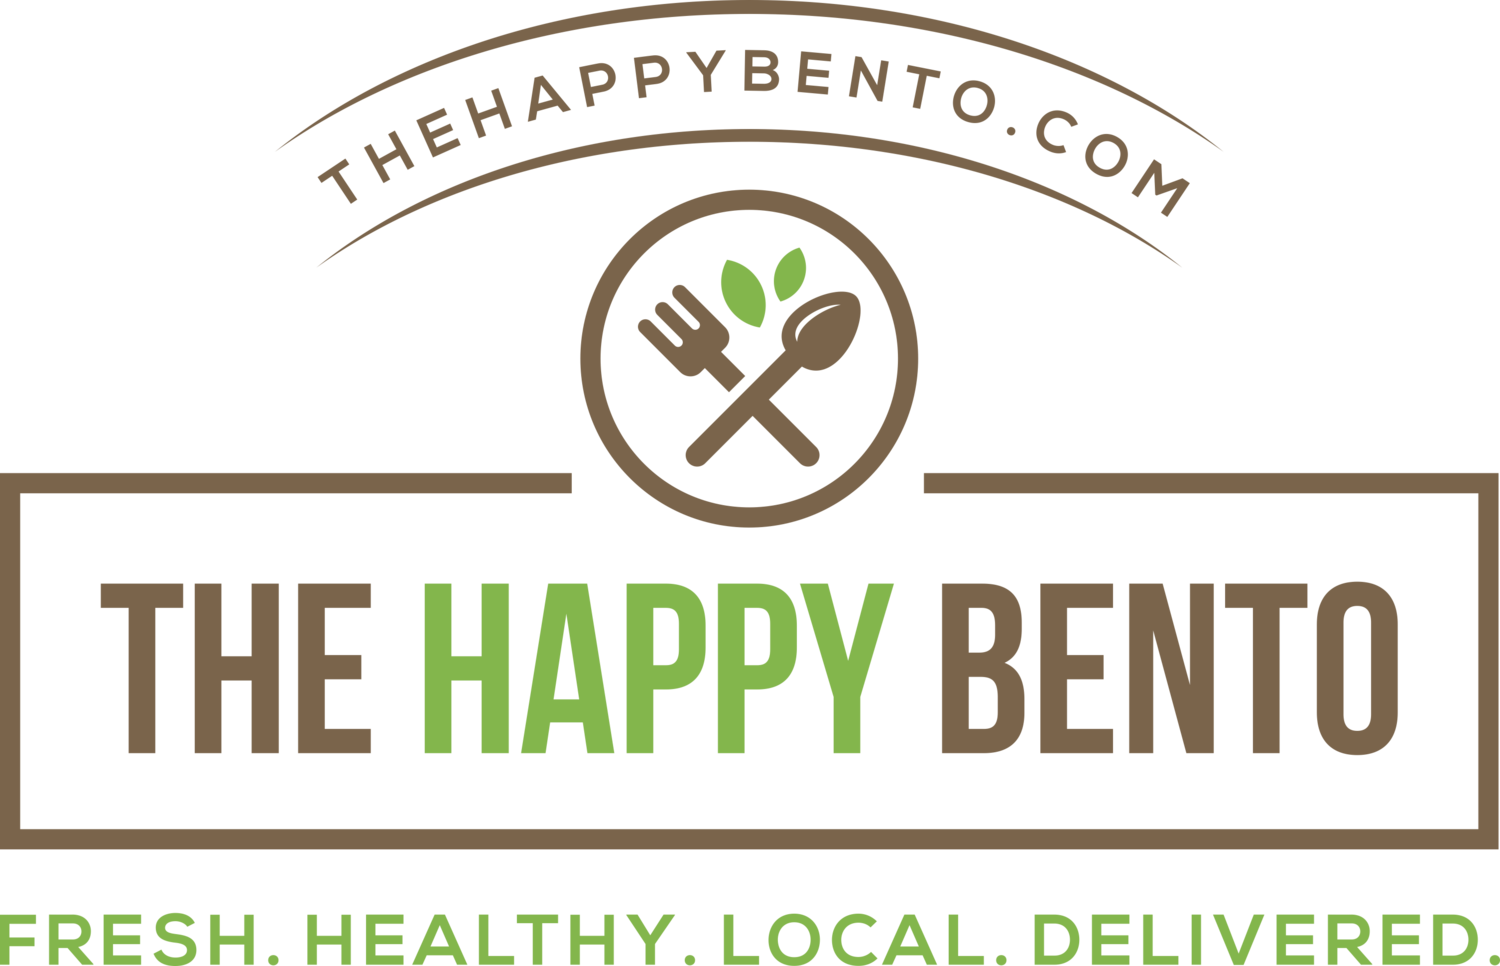 The Happy Bento